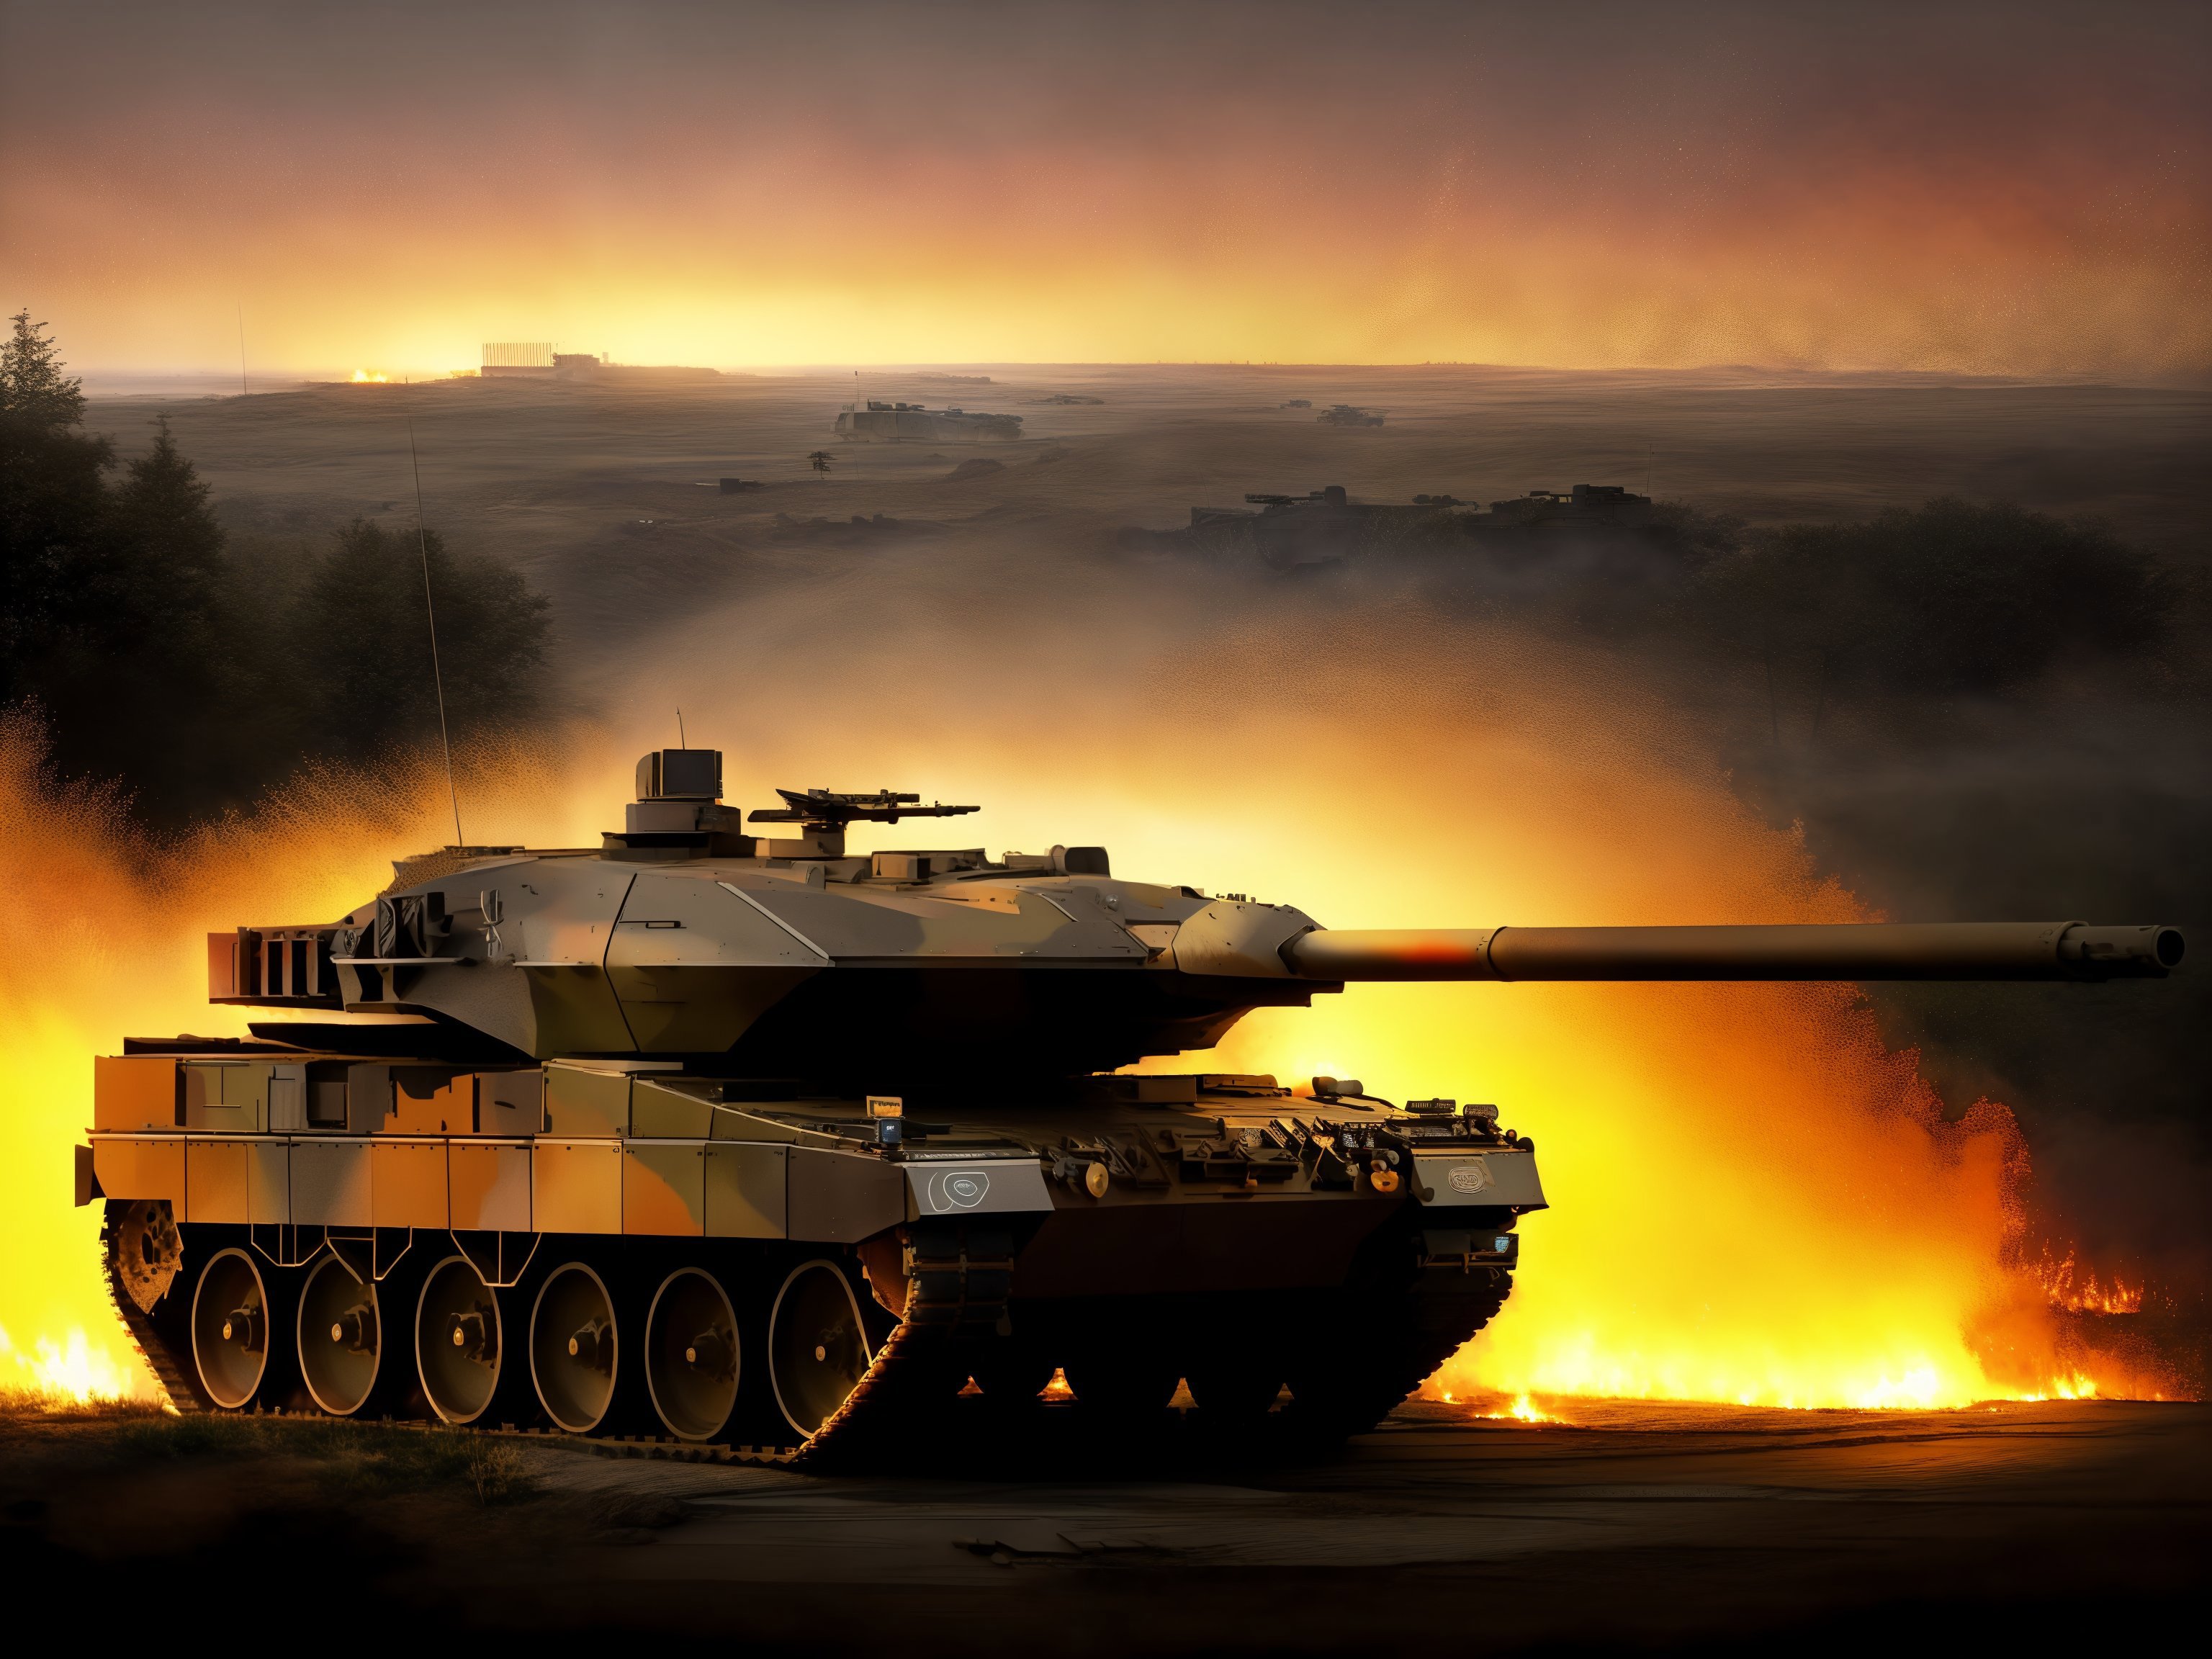 Leopard 2 ( Main battle tank ) image by ARTik_31